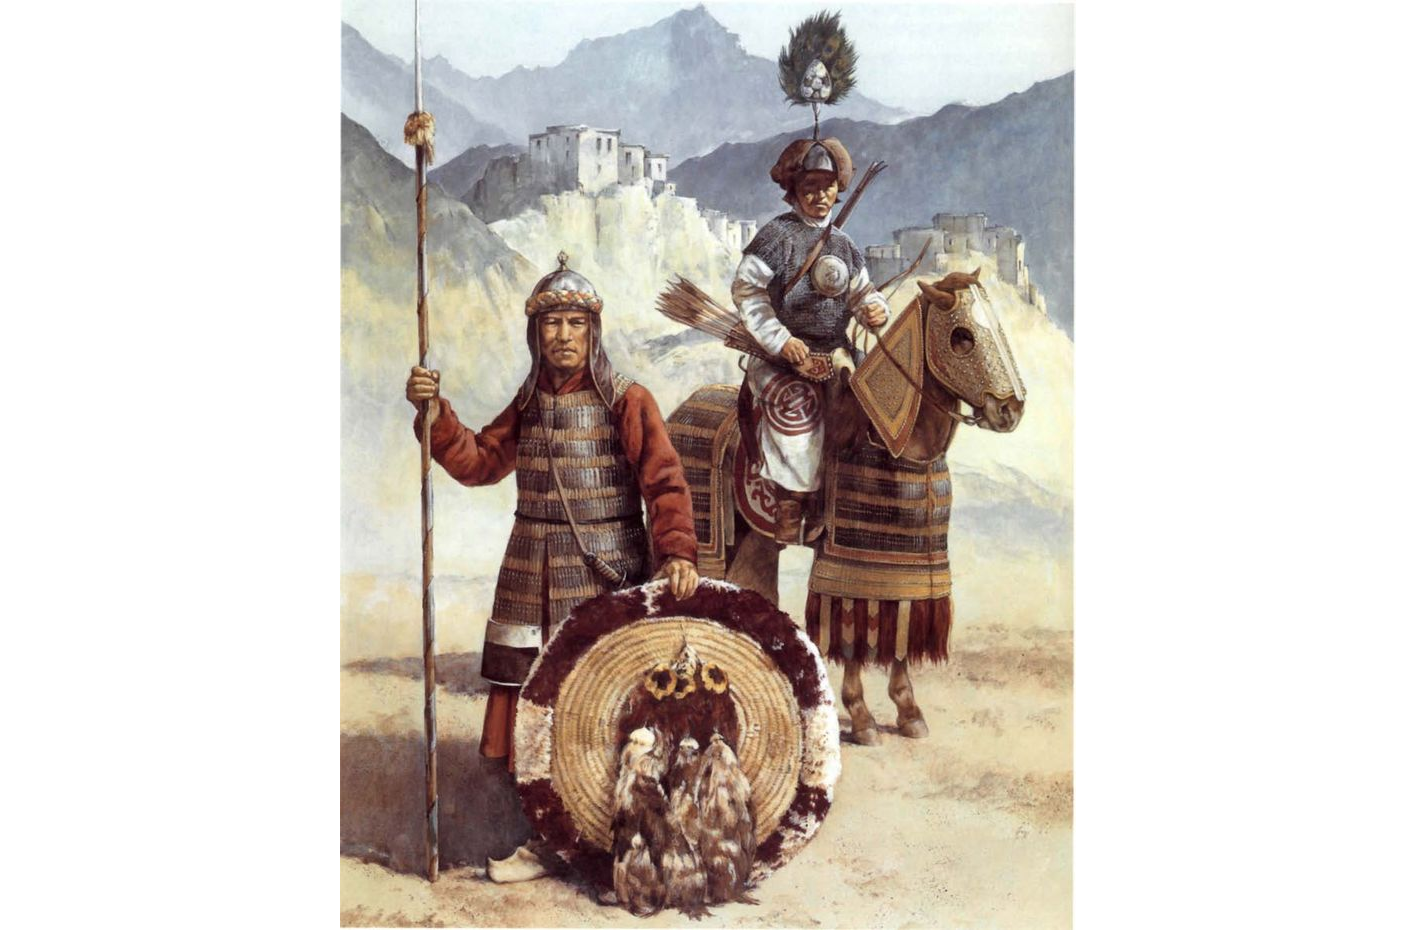 Medieval Tibetan warriors